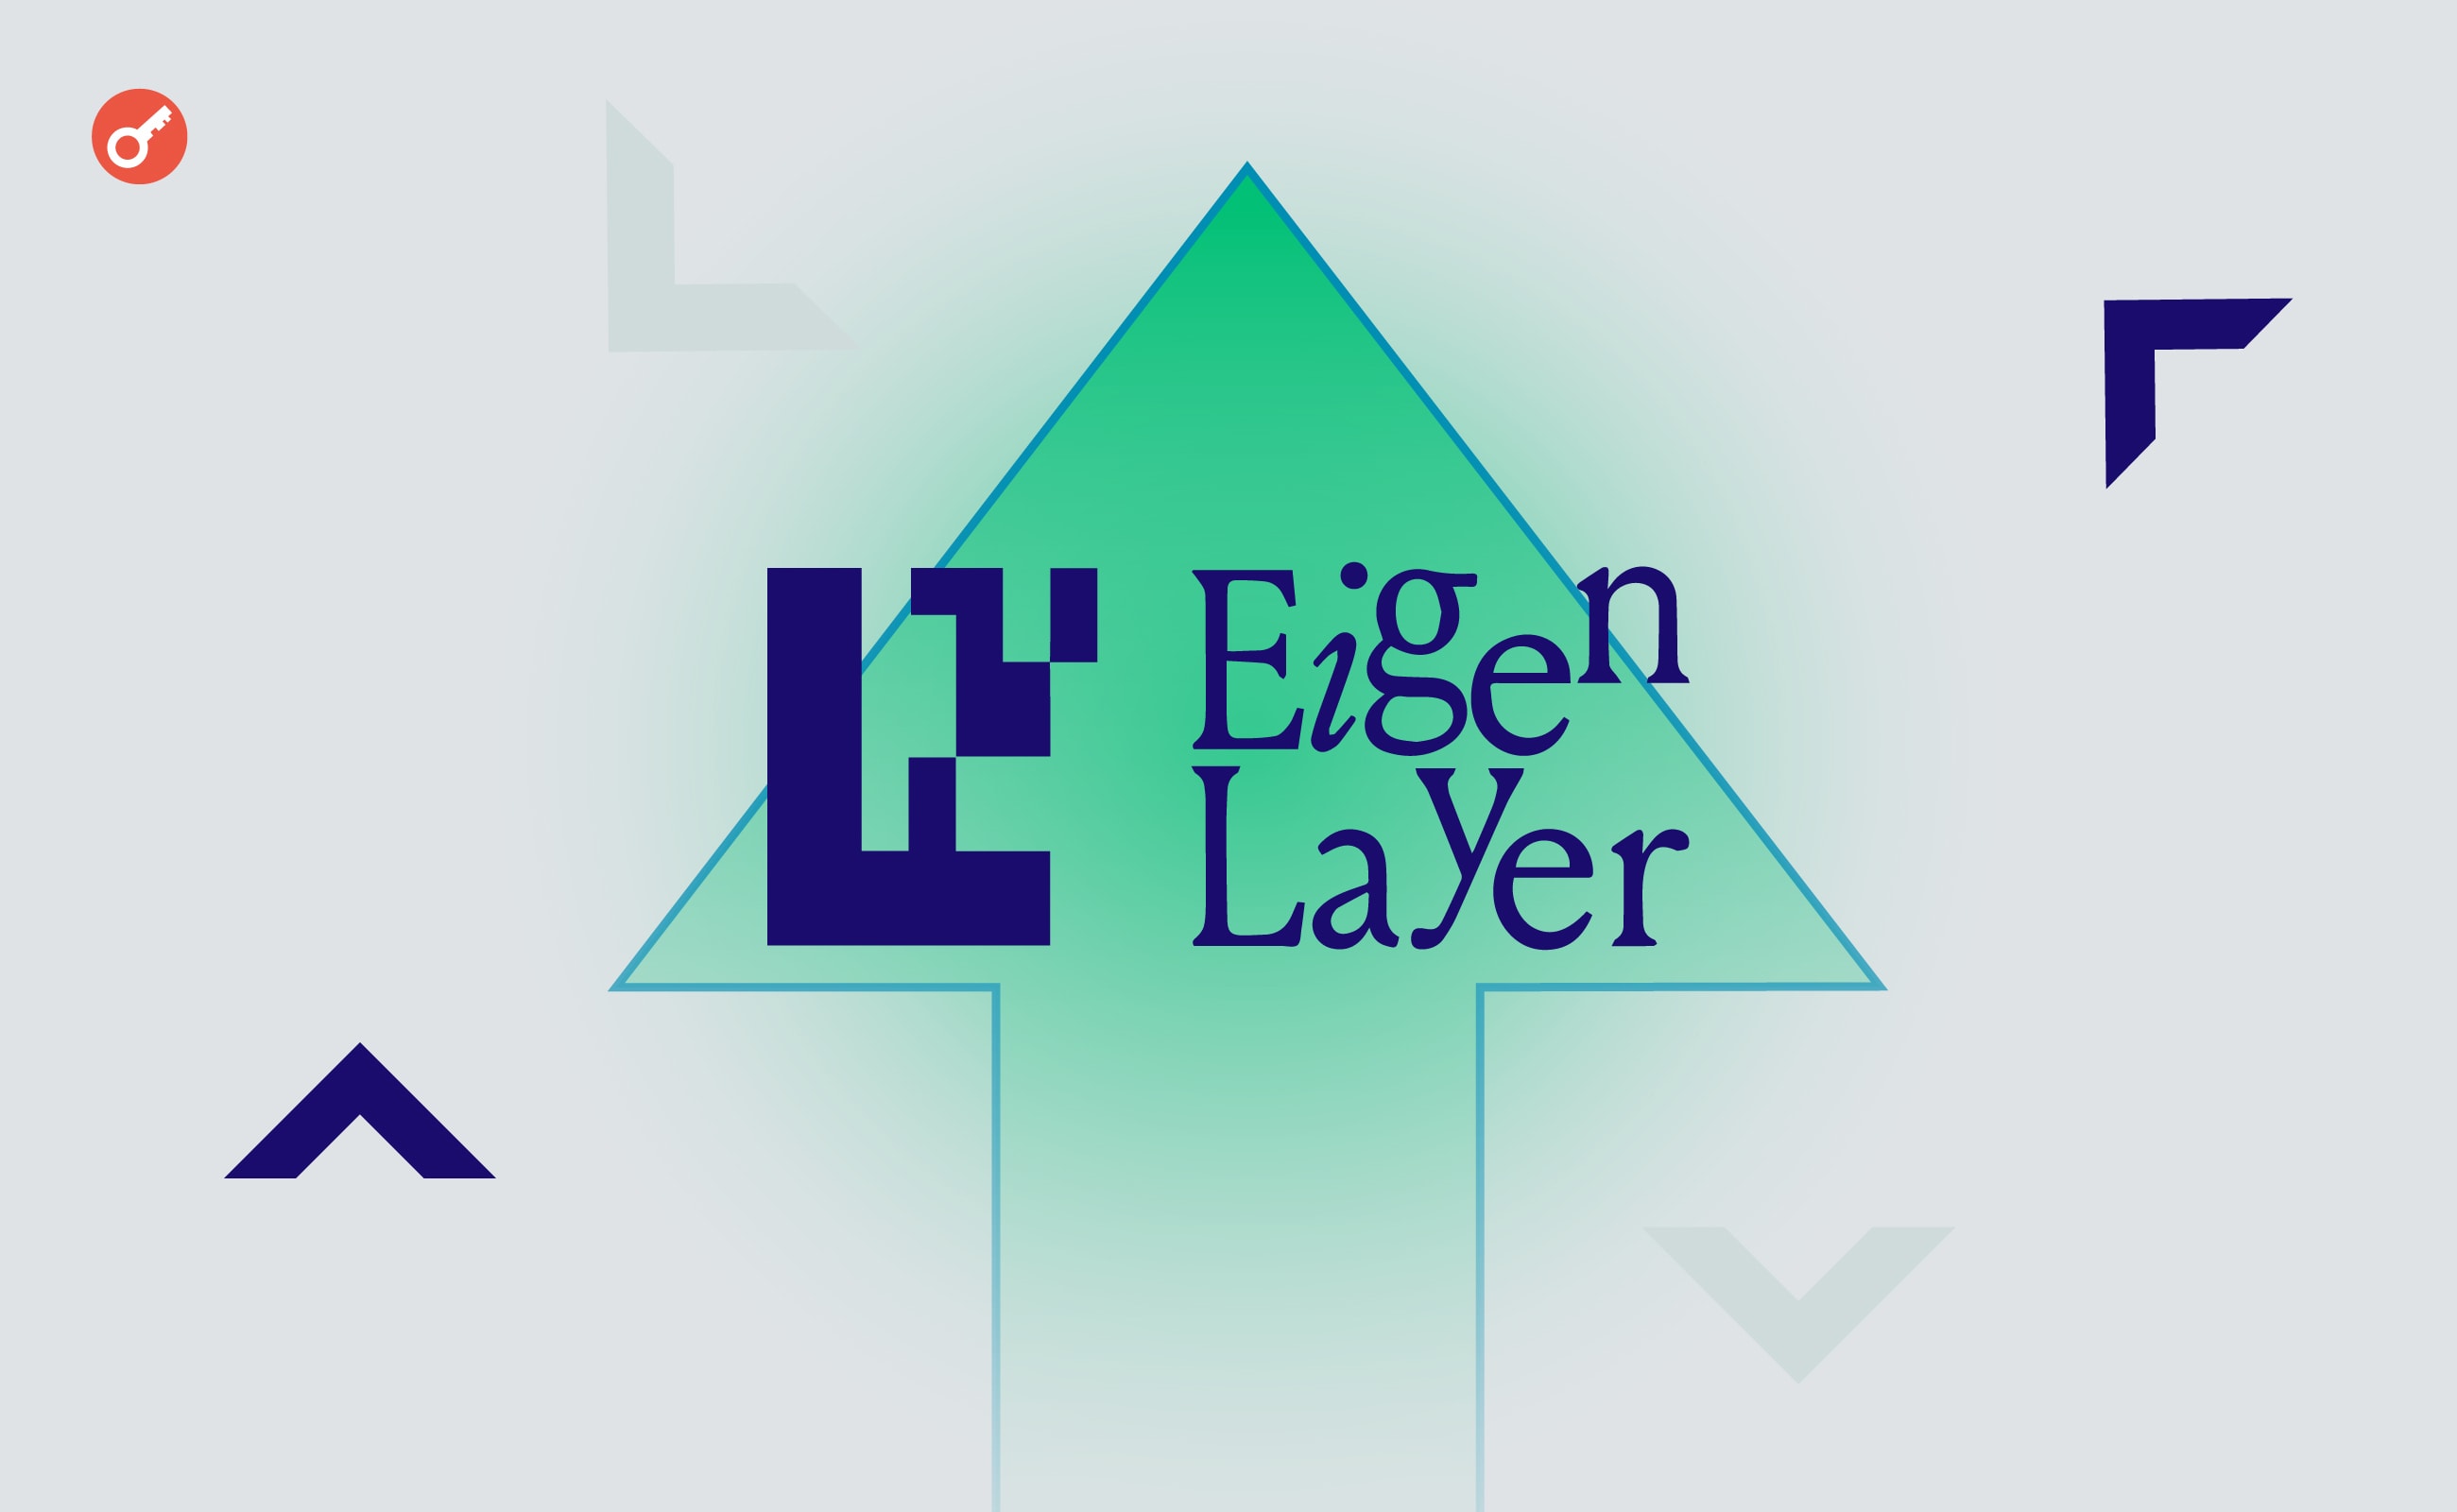 Kolejny deweloper Ethereum przyznał się do pracy dla EigenLayer. Główny kolaż wiadomości.